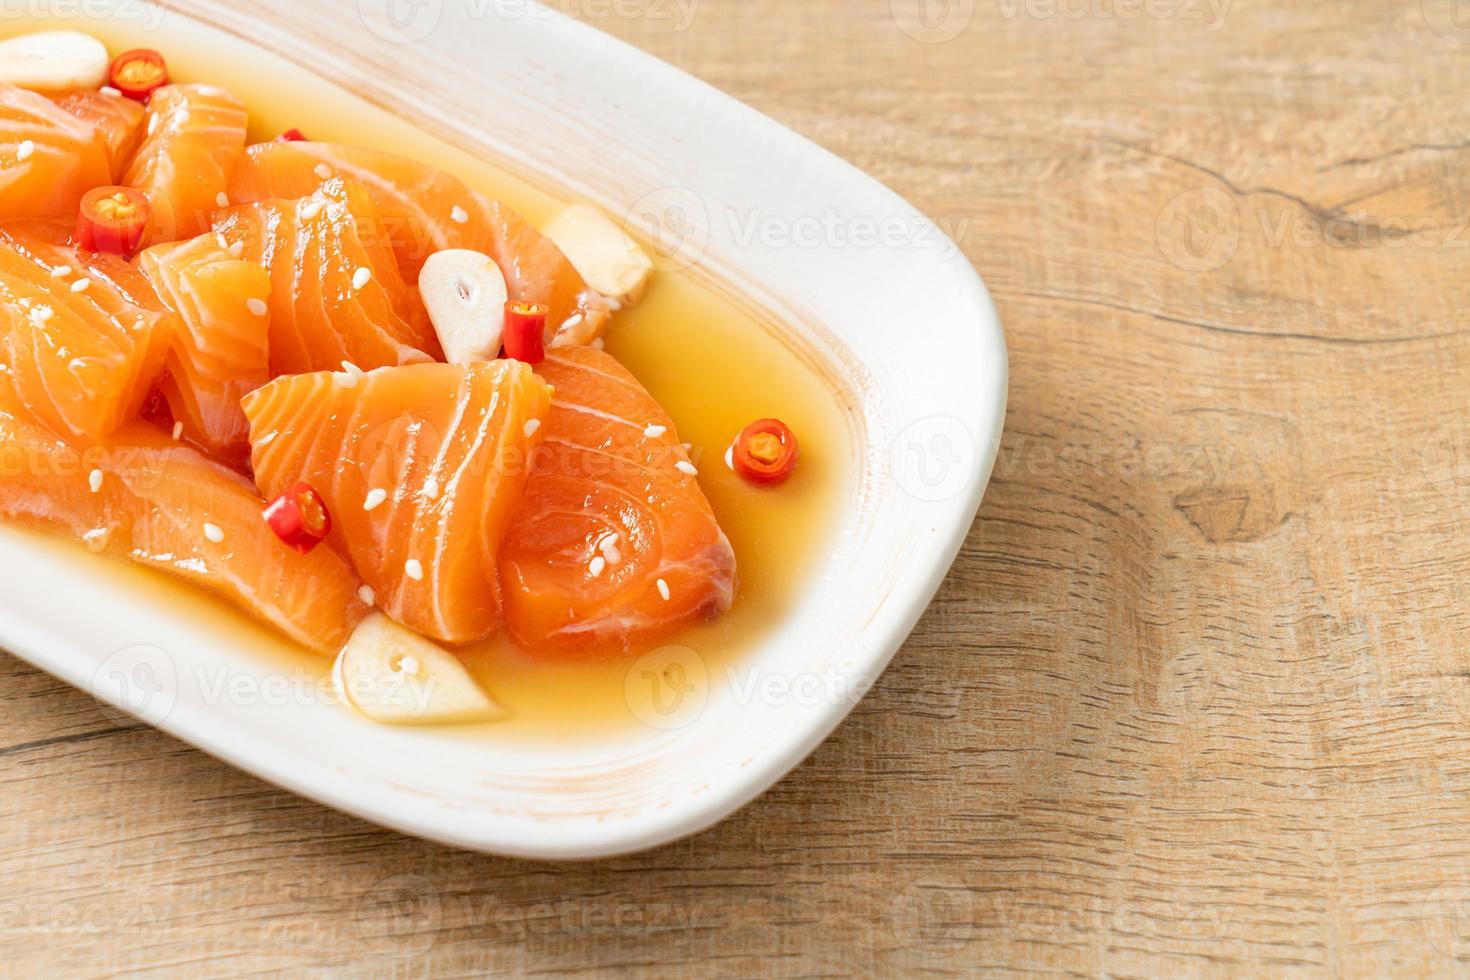 Salmón fresco crudo marinado shoyu o salmón en escabeche salsa de soja - estilo de comida asiática foto